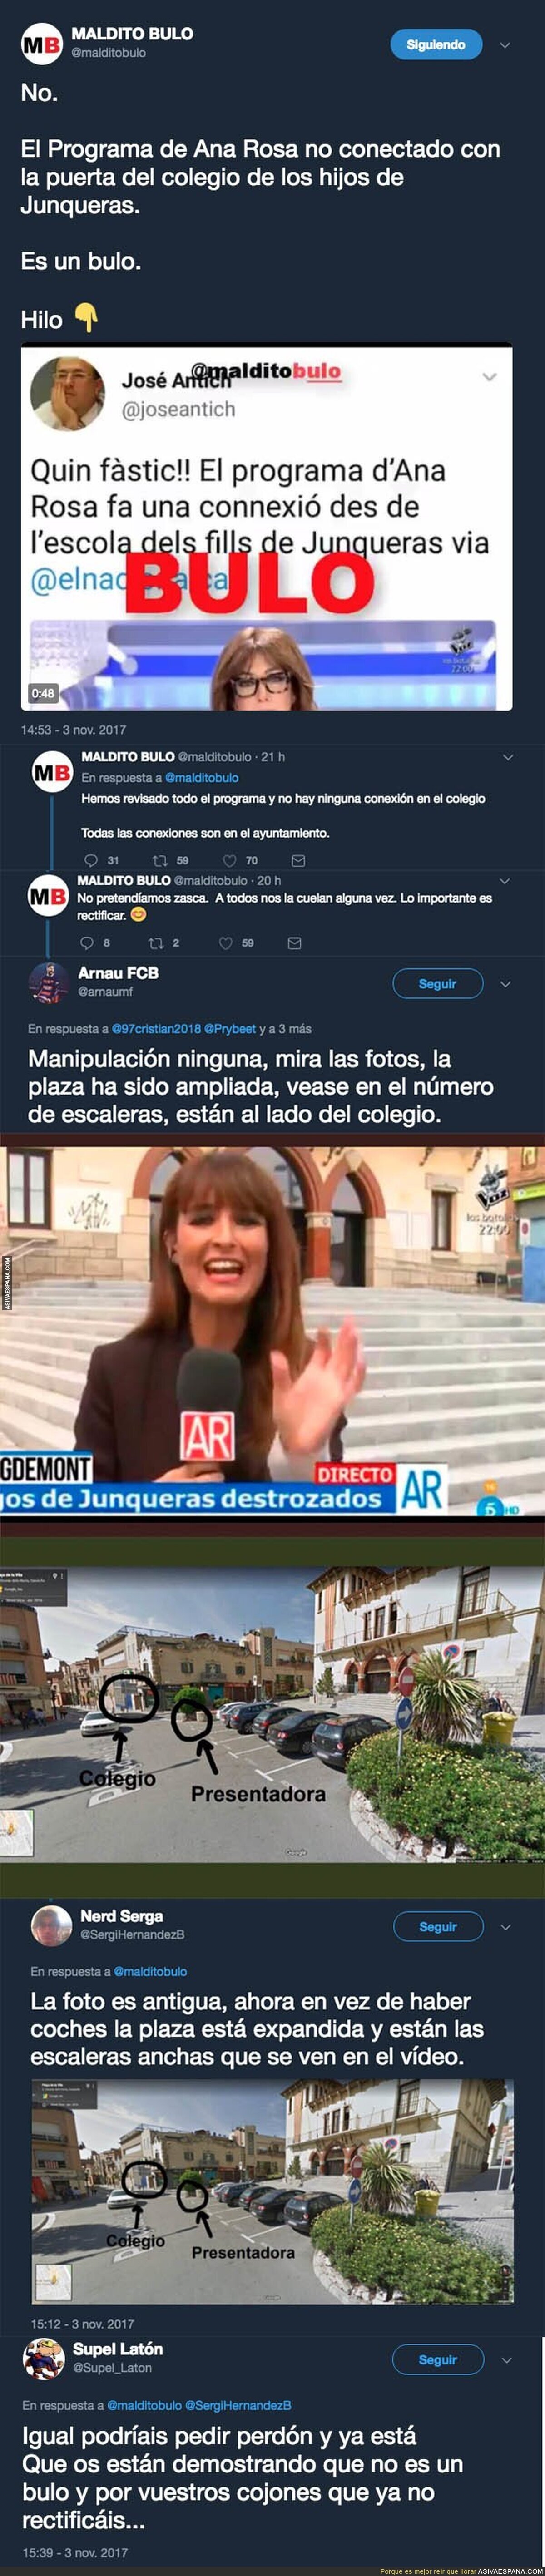 'El programa de Ana Rosa' SI grabó al lado del colegio del hijo de Oriol Junqueras y NO es un bulo